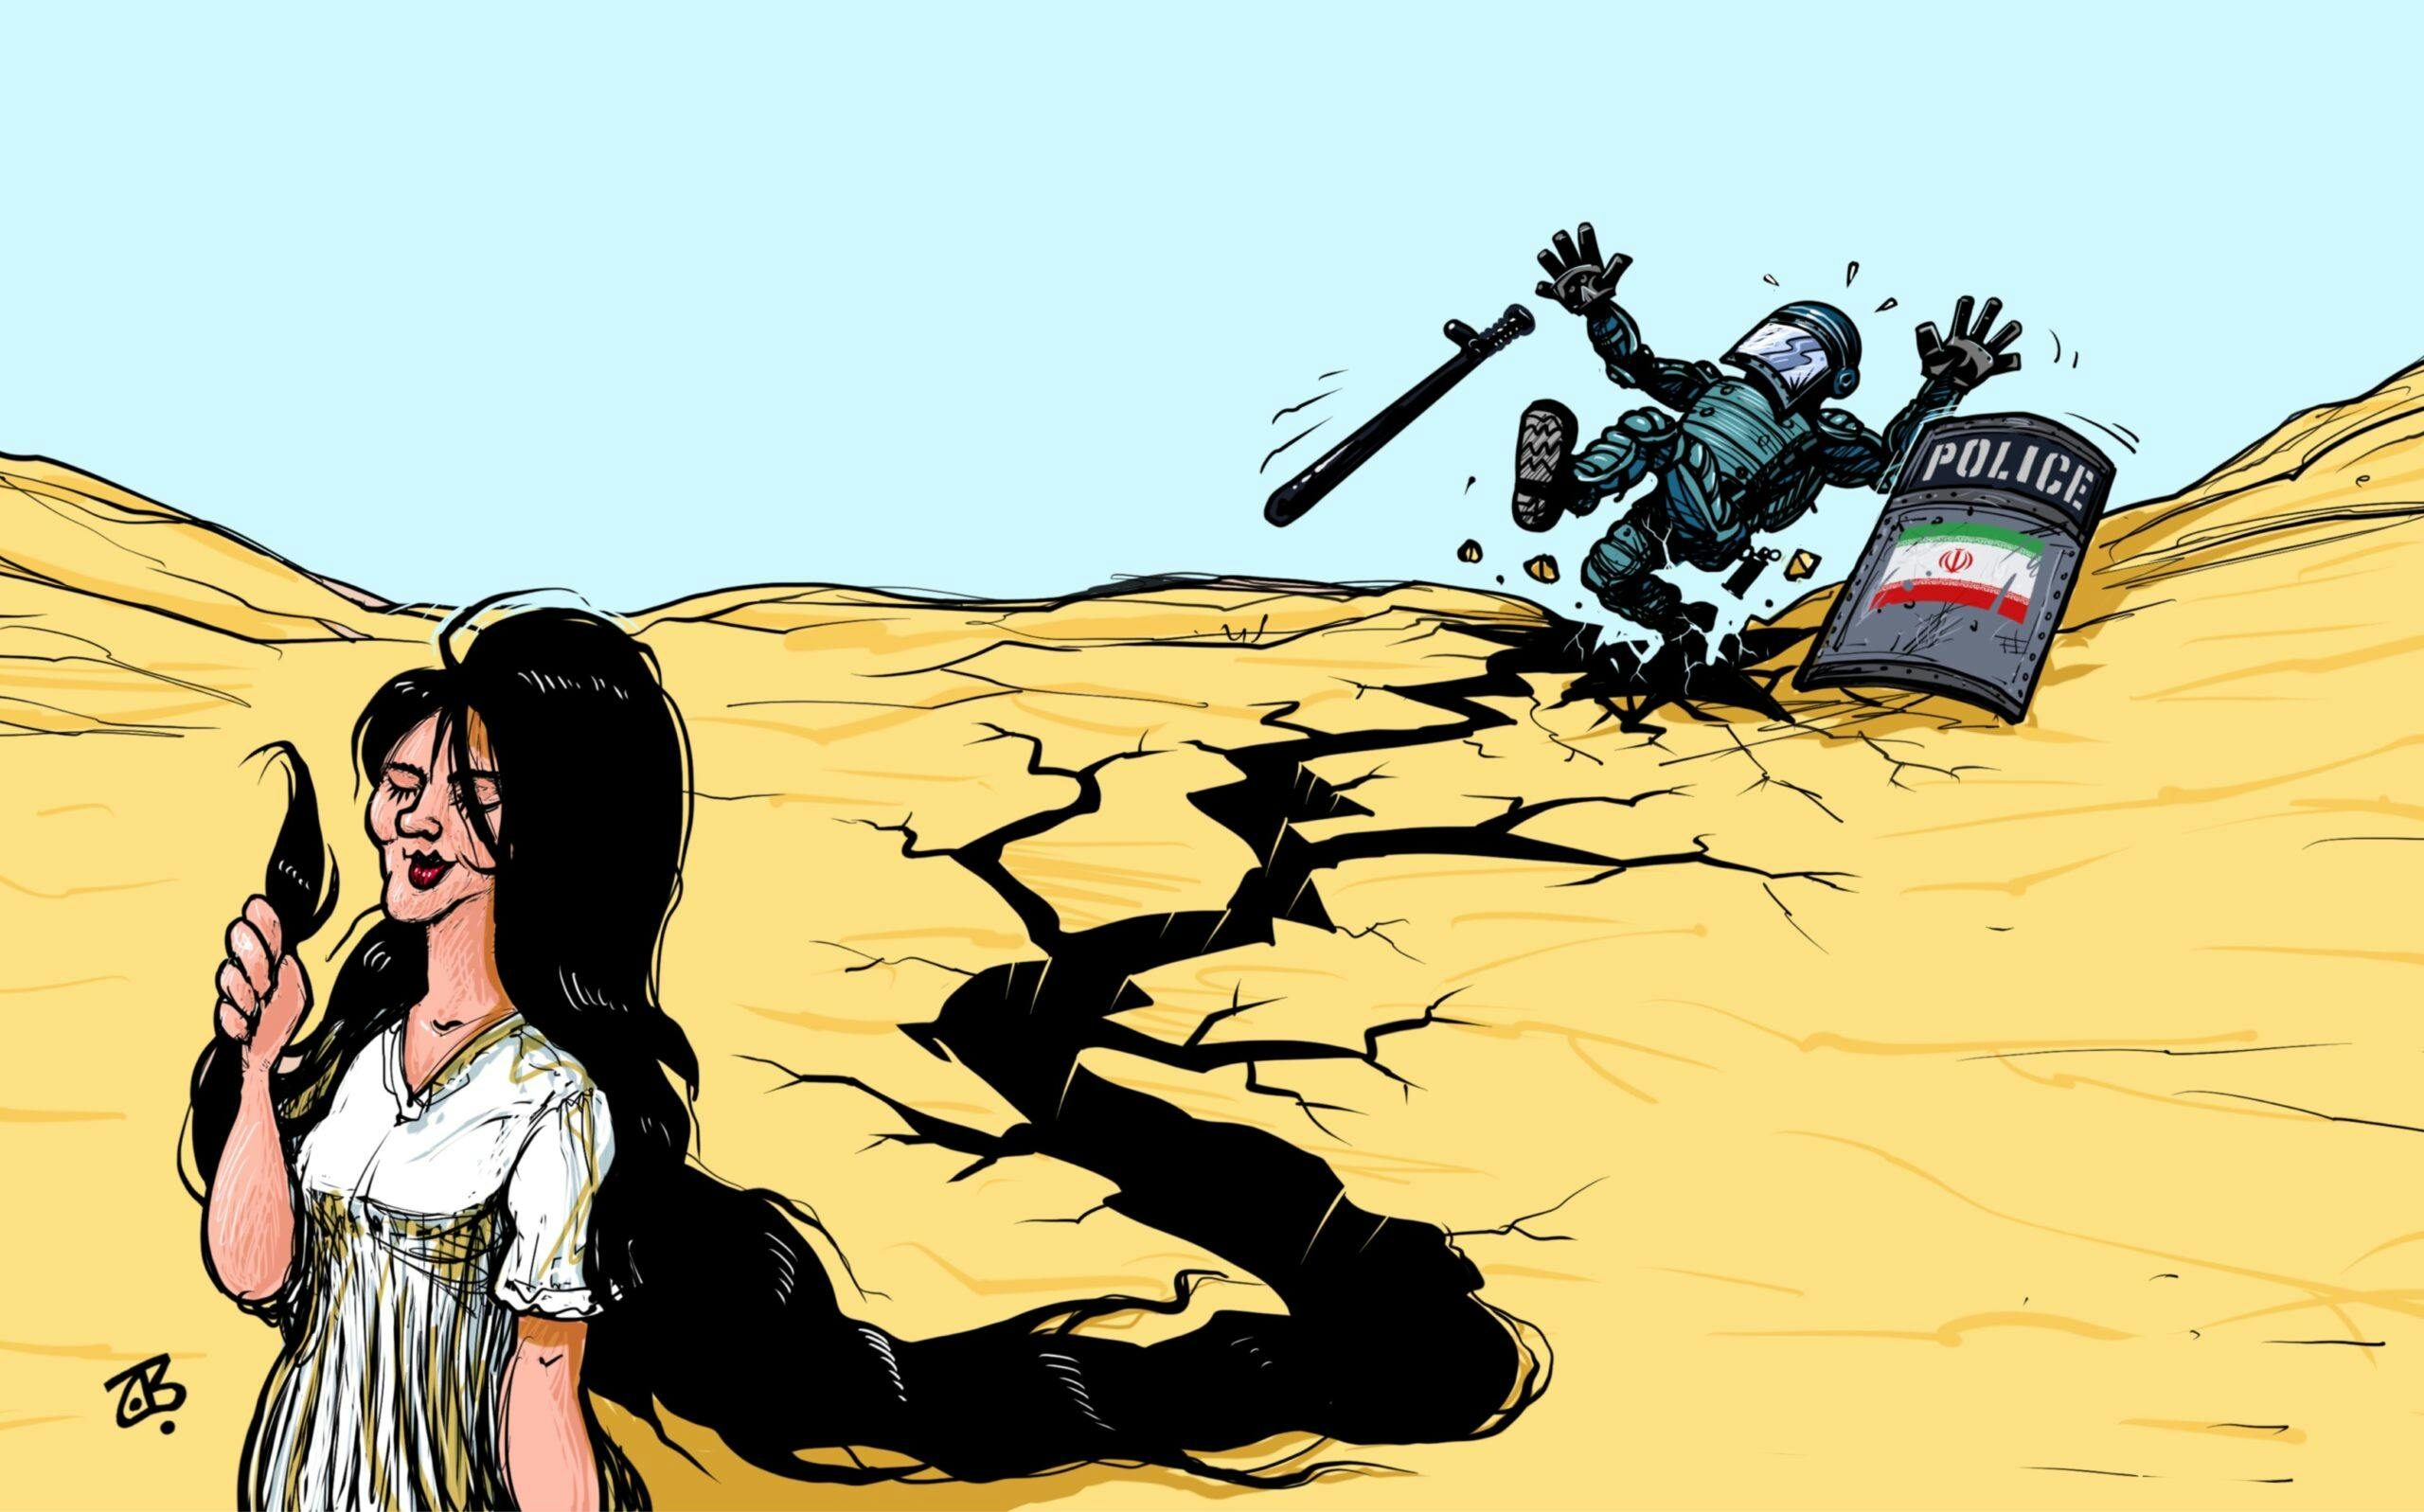 کارتونی با نام «انقلاب مهسا» که نشان می‌دهد موی زنی شبیه مهسا به شکافی برای فرو رفتن نیروهای سرکوب بدل شده است